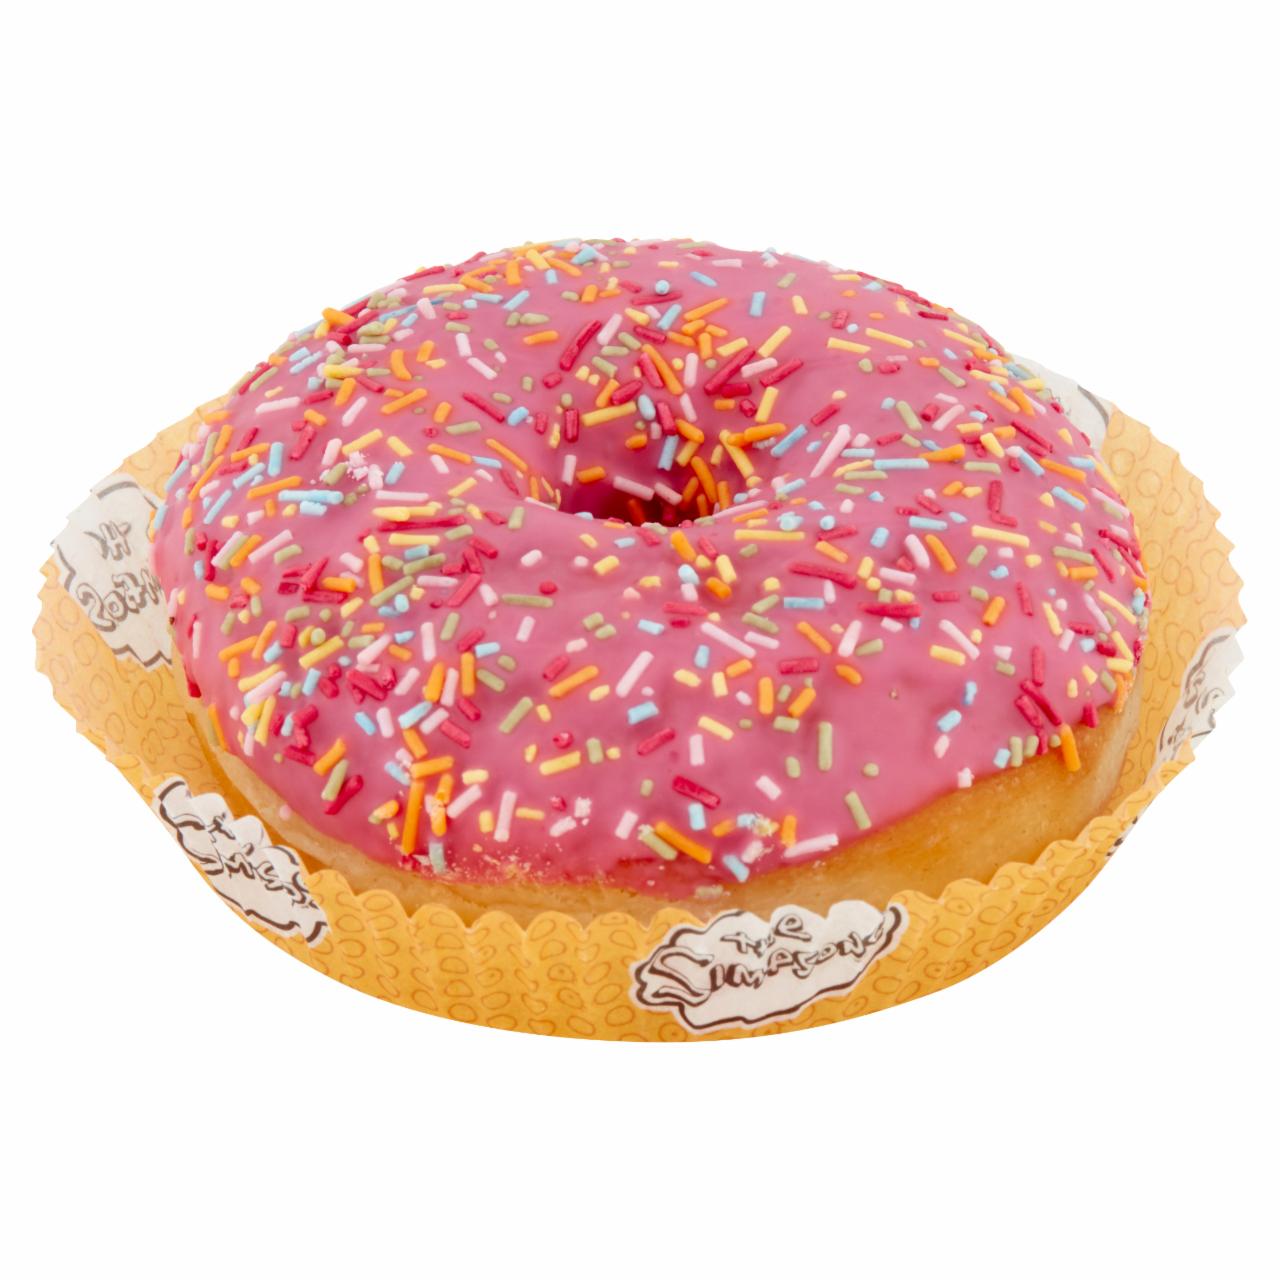 Zdjęcia - Simpsons Donut 2,73 kg (48 x 57 g)